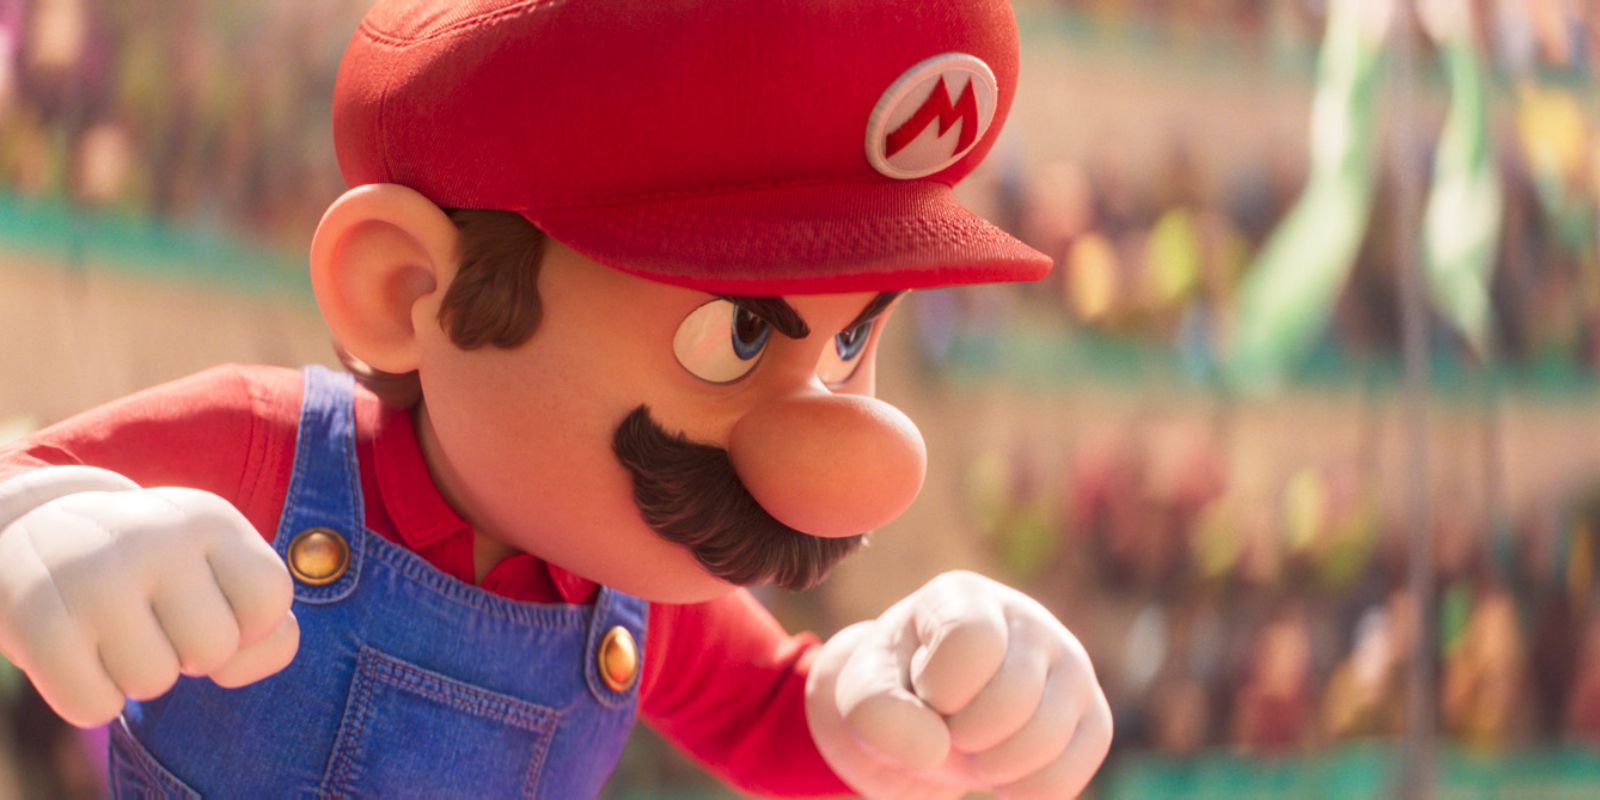 Pré-venda de Super Mario Bros - O Filme já está disponível no IMAX  Palladium